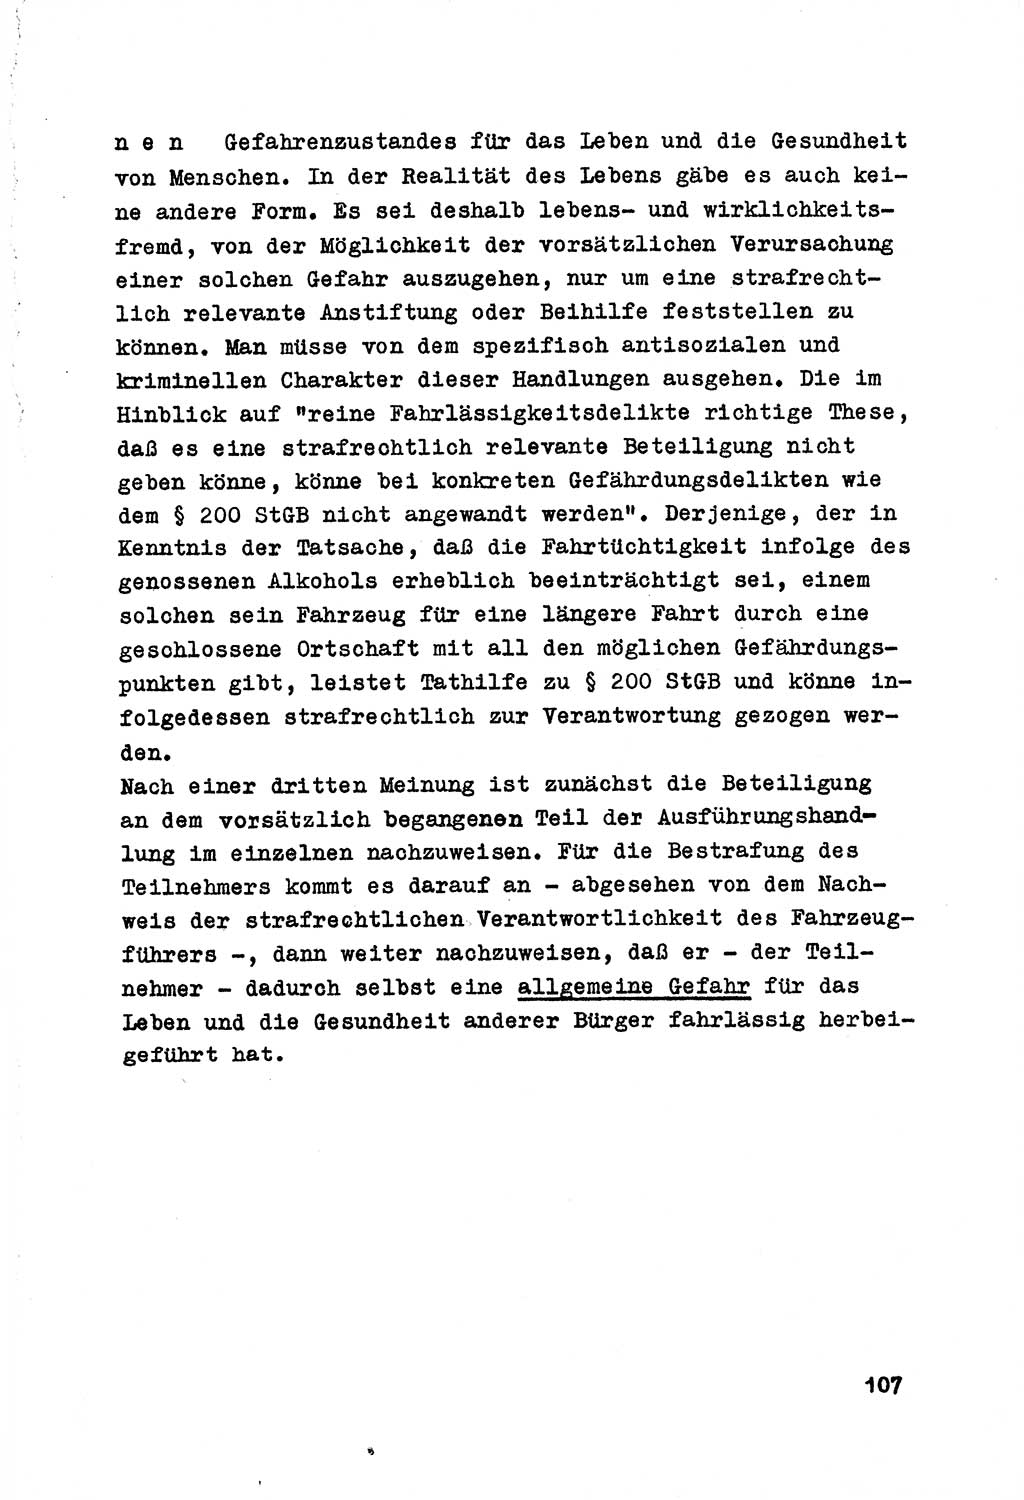 Strafrecht der DDR (Deutsche Demokratische Republik), Besonderer Teil, Lehrmaterial, Heft 7 1970, Seite 107 (Strafr. DDR BT Lehrmat. H. 7 1970, S. 107)